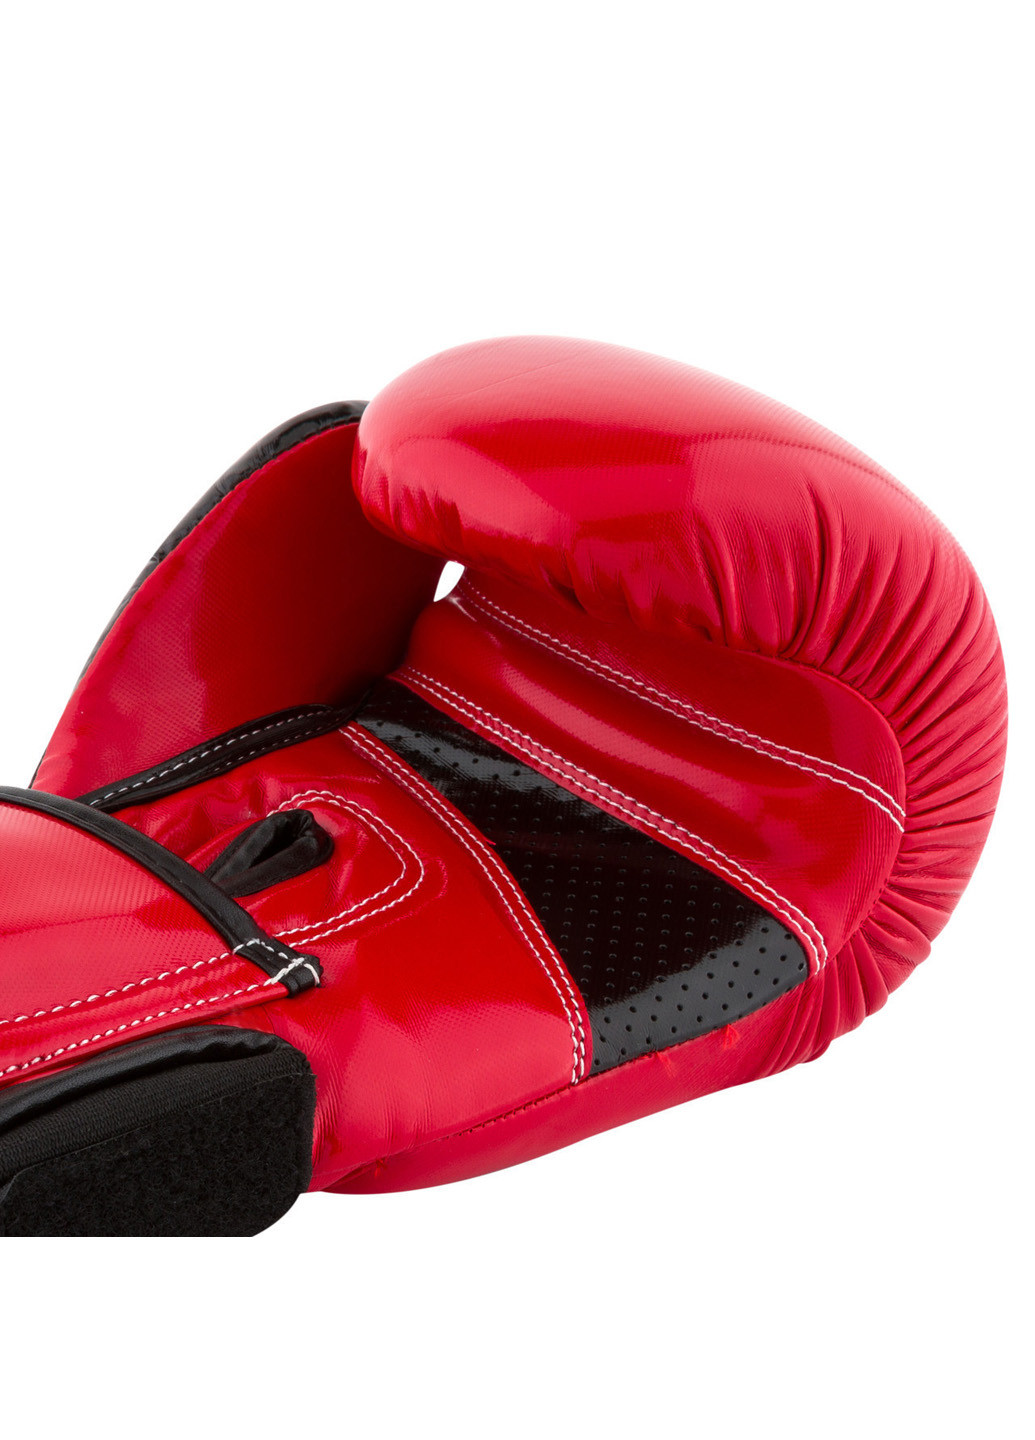 Боксерские перчатки 16 унций PowerPlay (196422752)